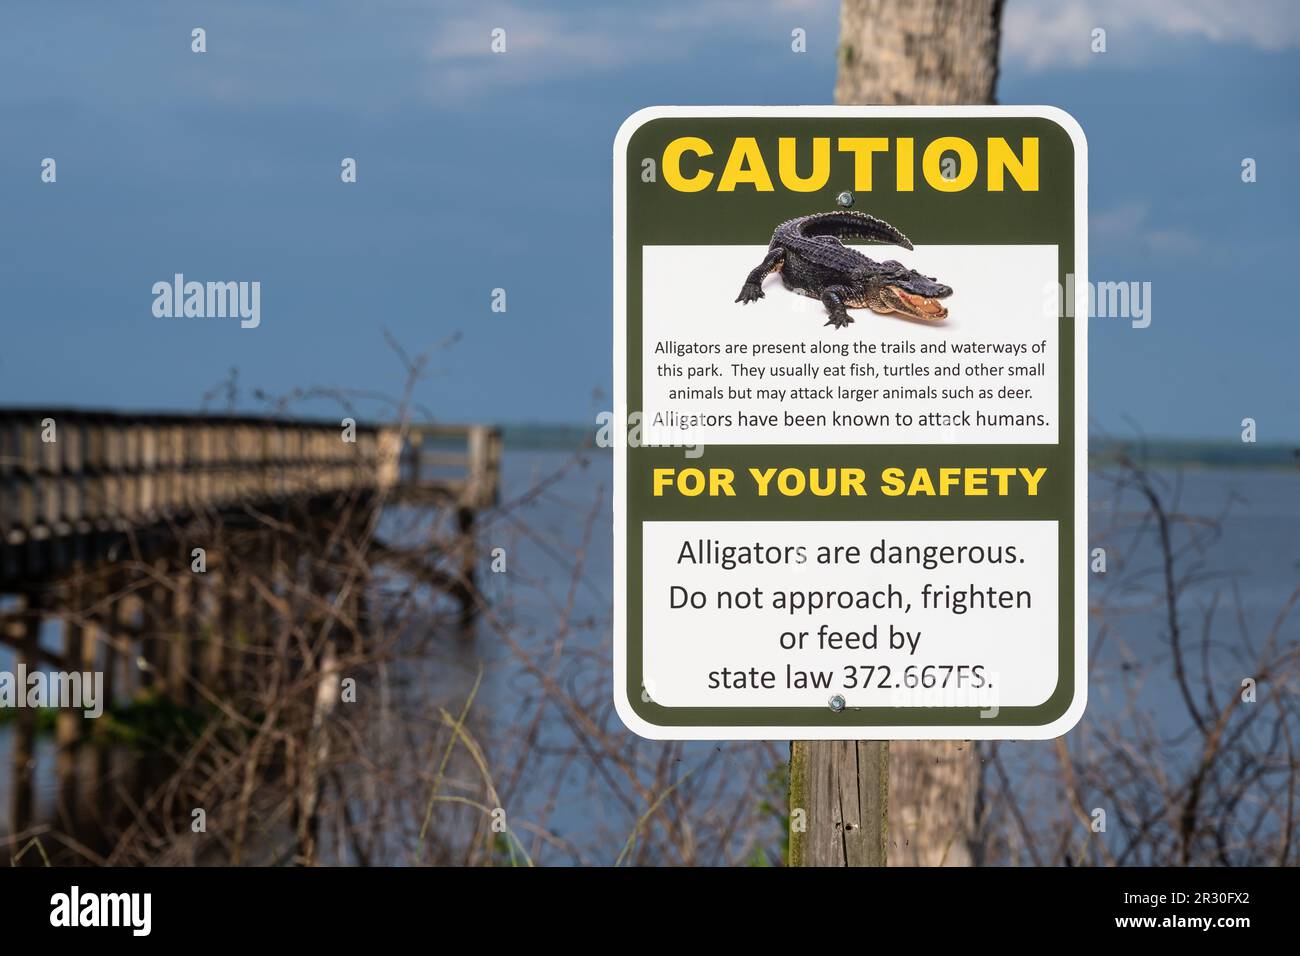 Panneau d'avertissement des alligators près de la promenade d'observation d'Ecopassage au parc national Paynes Prairie Preserve à Micanopy, Floride, près de Gainesville. (ÉTATS-UNIS) Banque D'Images